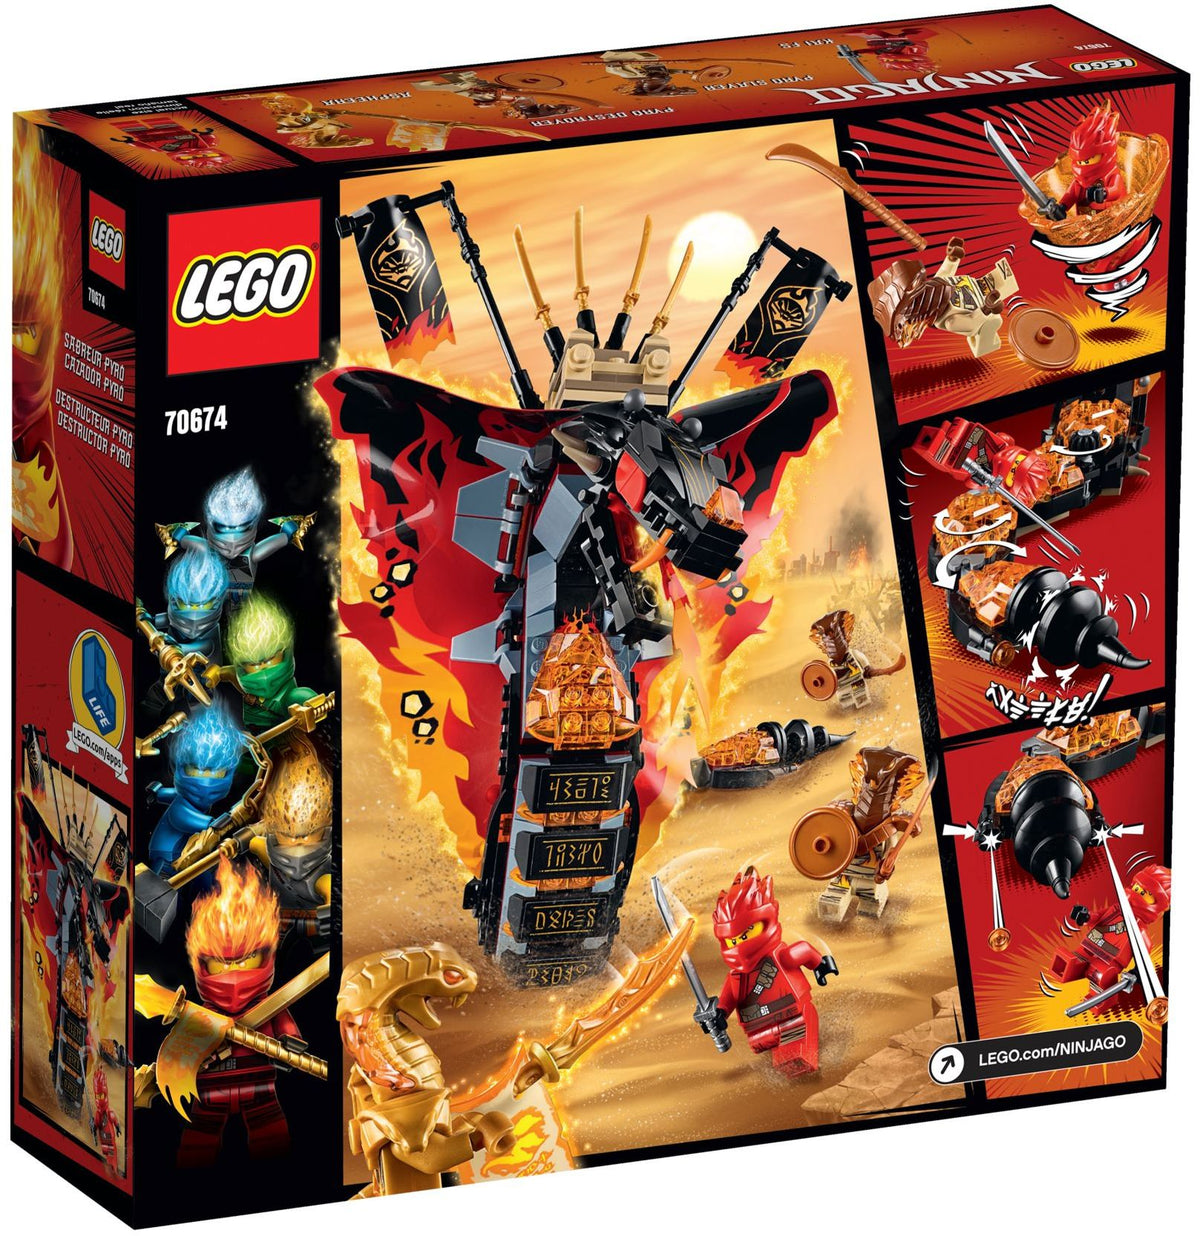 LEGO Ninjago 70674 Feuerschlange